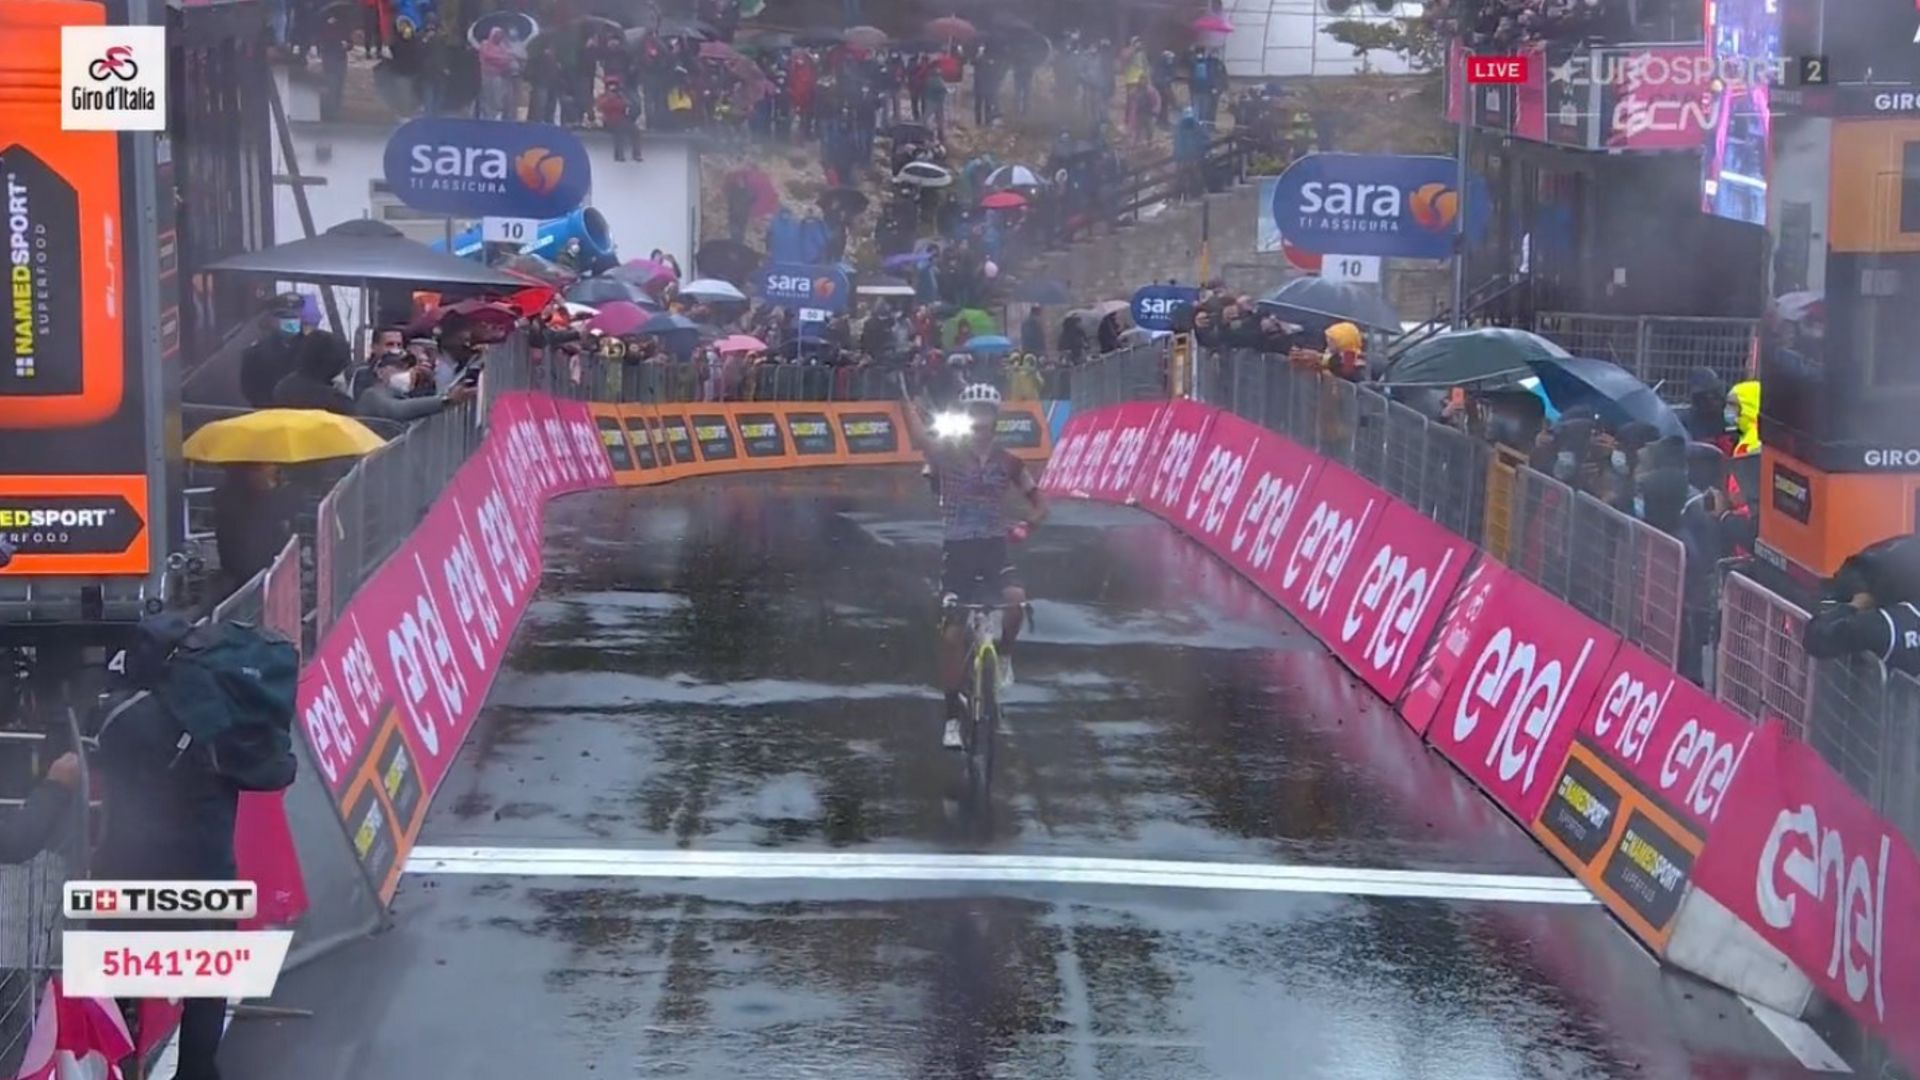 Guerreiro vainqueur au sommet sur le Giro.